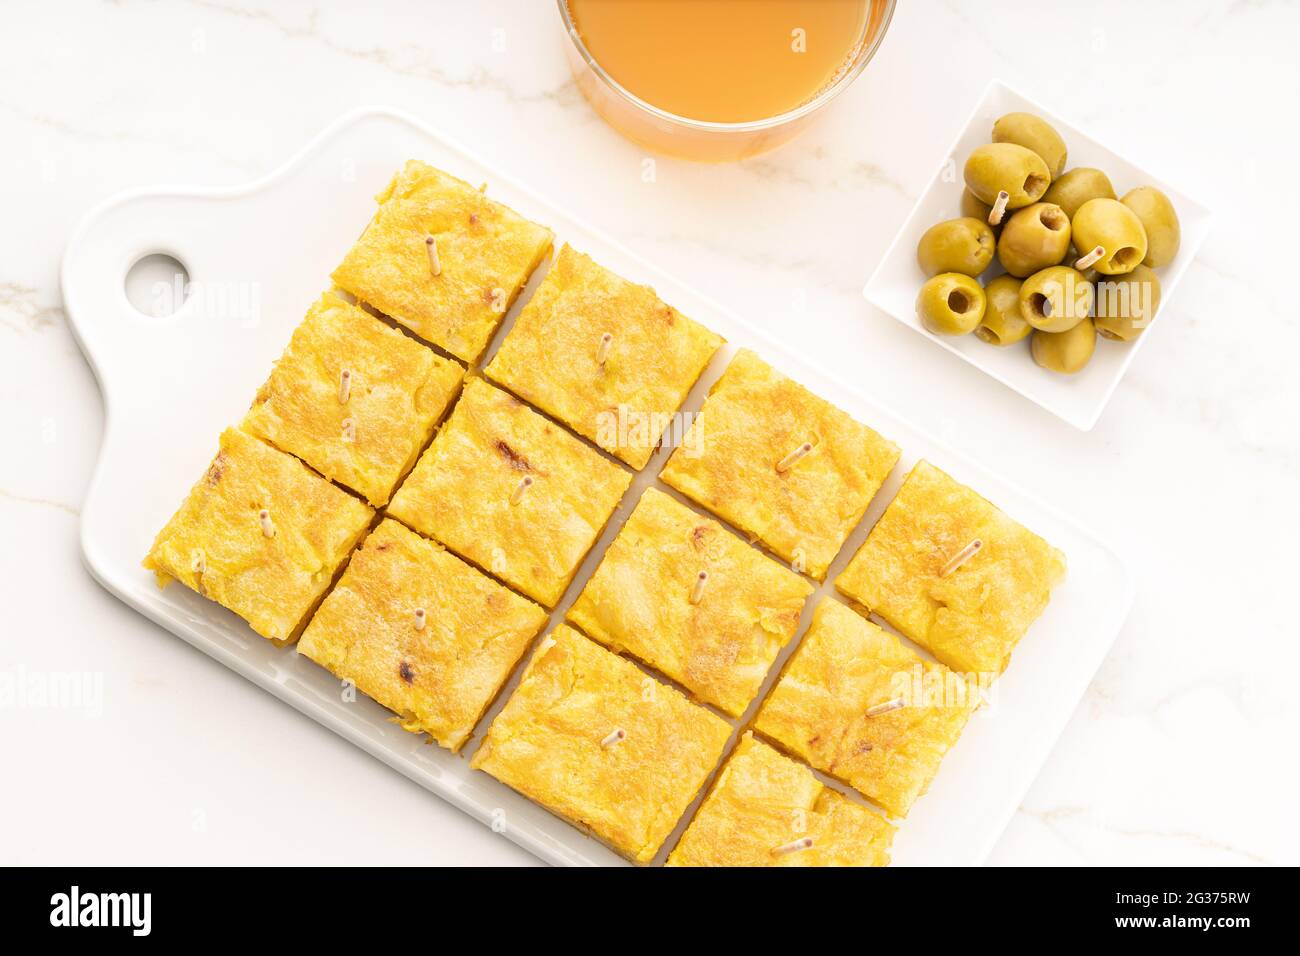 L'apéritif à omelette espagnole appelée tortilla espagnole sur une table en marbre. Tapa typiquement espagnol Banque D'Images